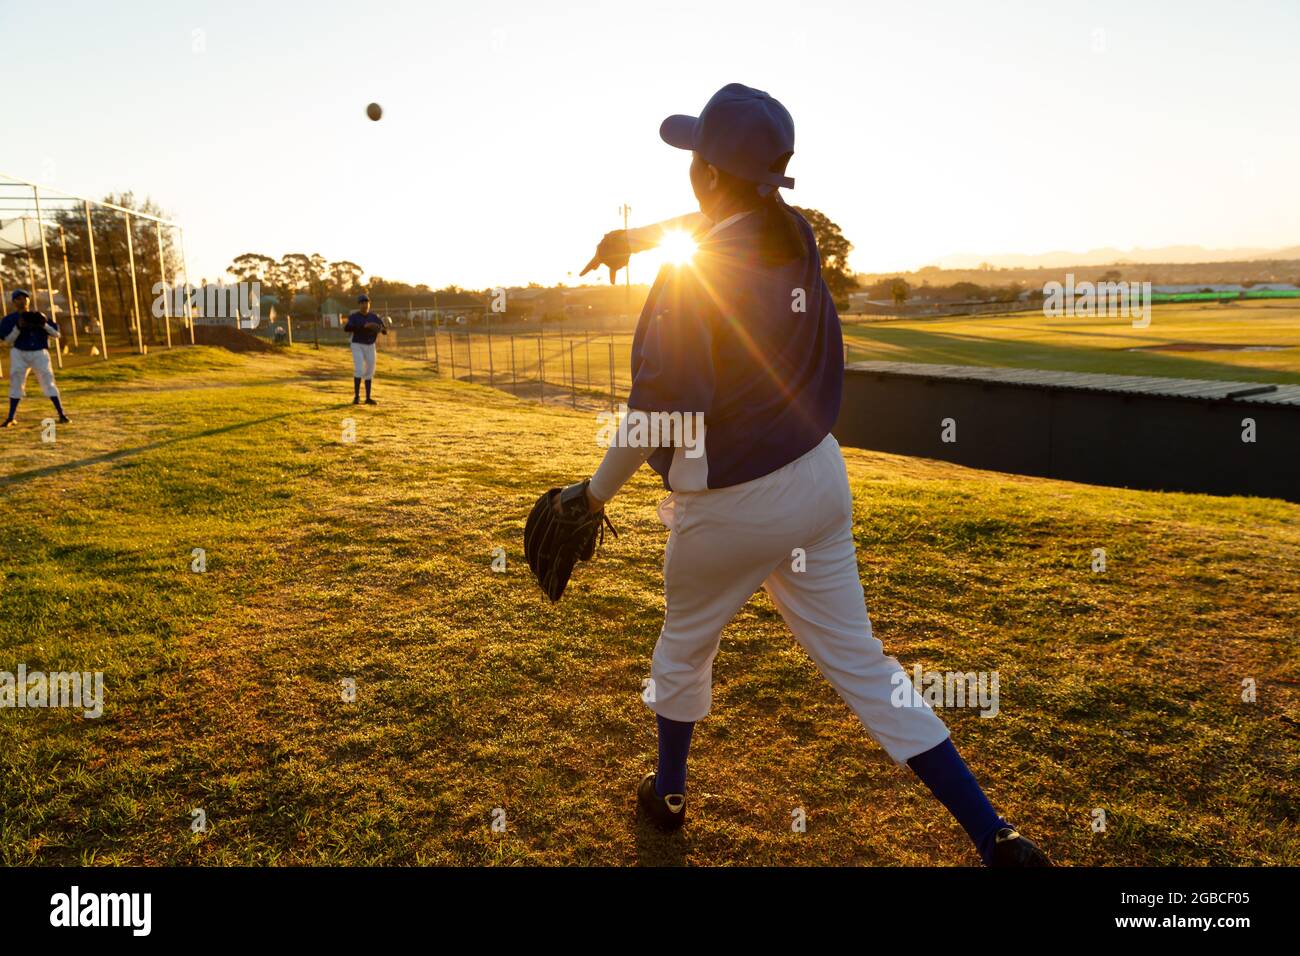 Un groupe diversifié de joueuses de baseball se réchauffent sur le terrain au lever du soleil, lancent et attrapent le ballon Banque D'Images